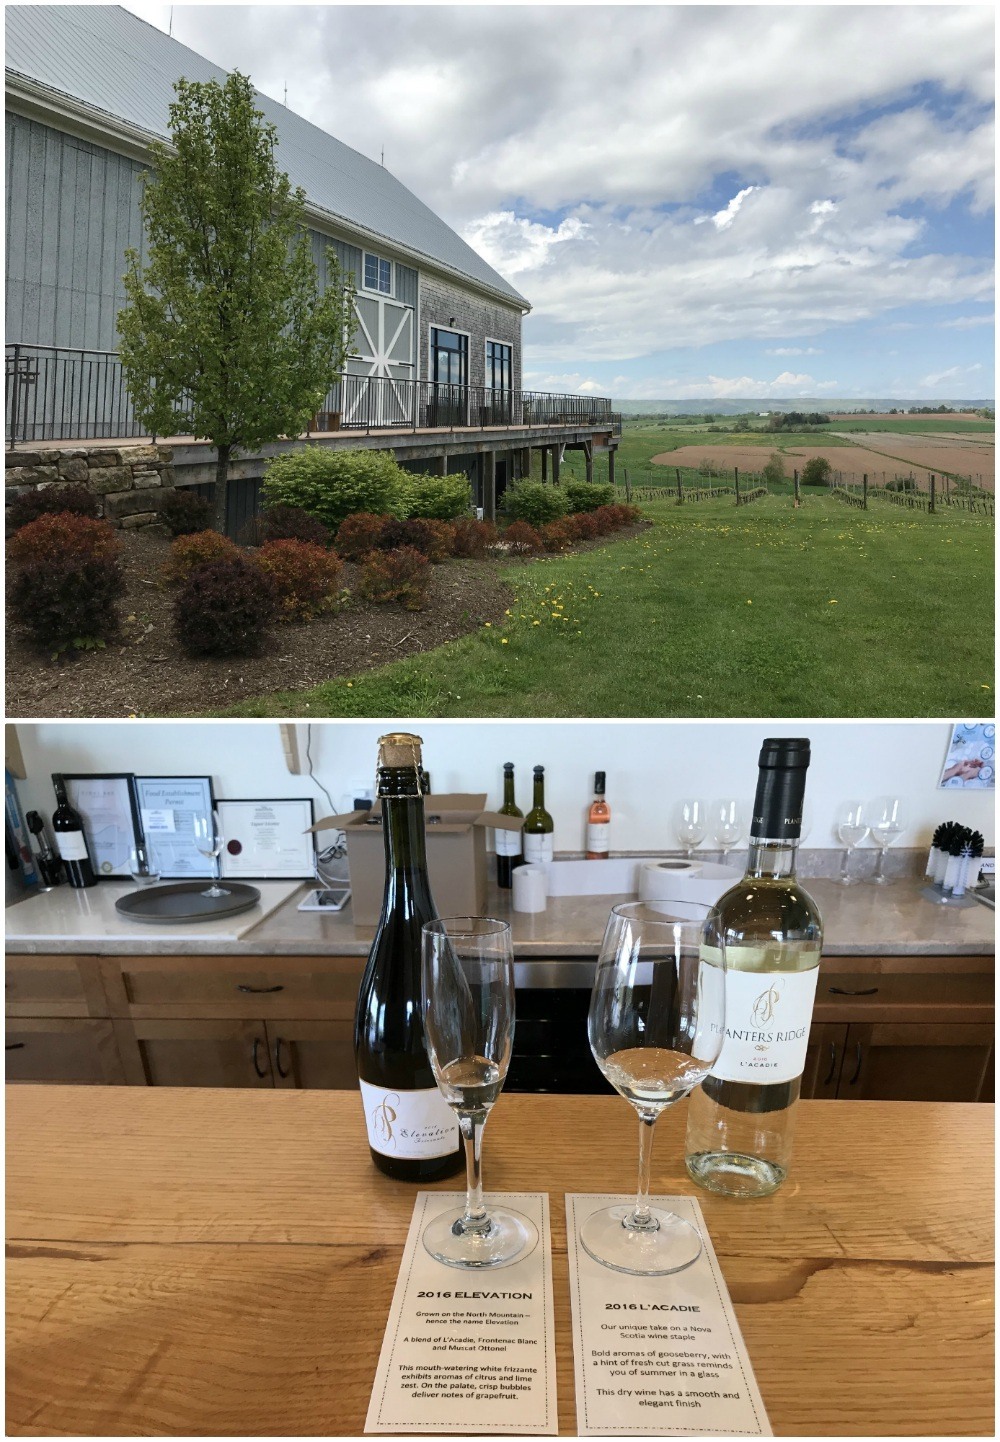 Planter's Ridge winery in Nova Scotia Canada